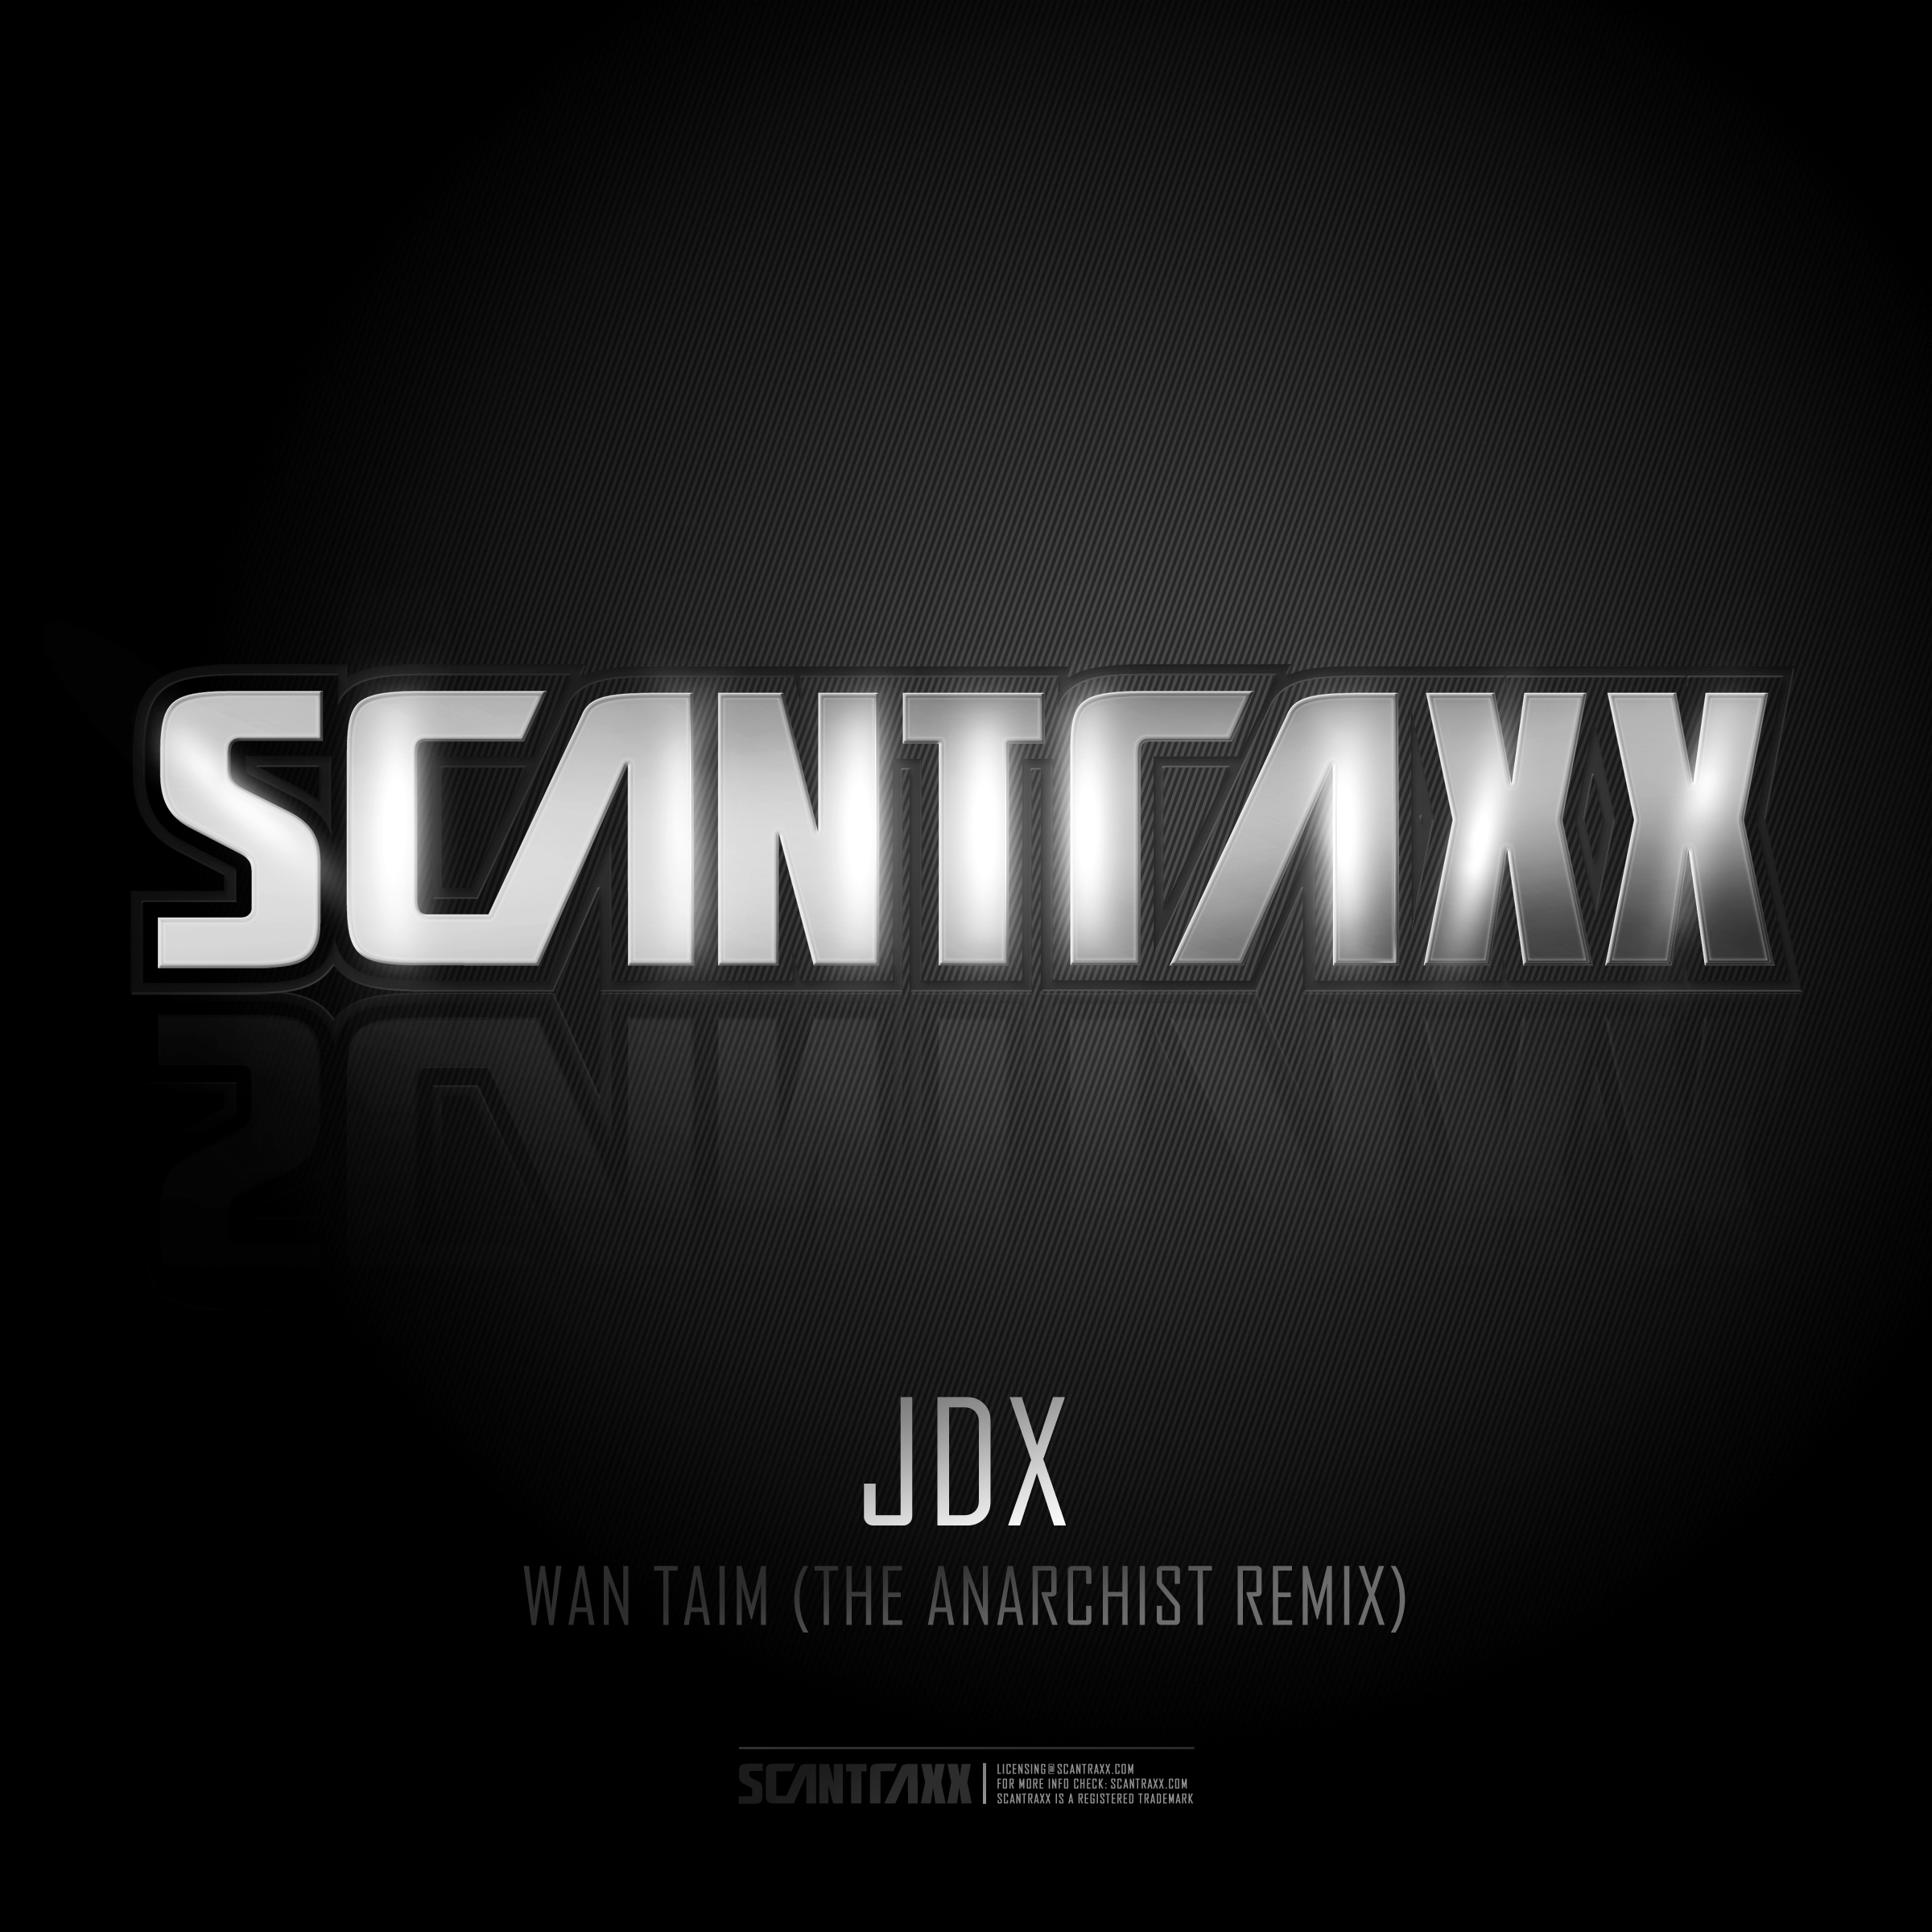 SCANTRAXX118